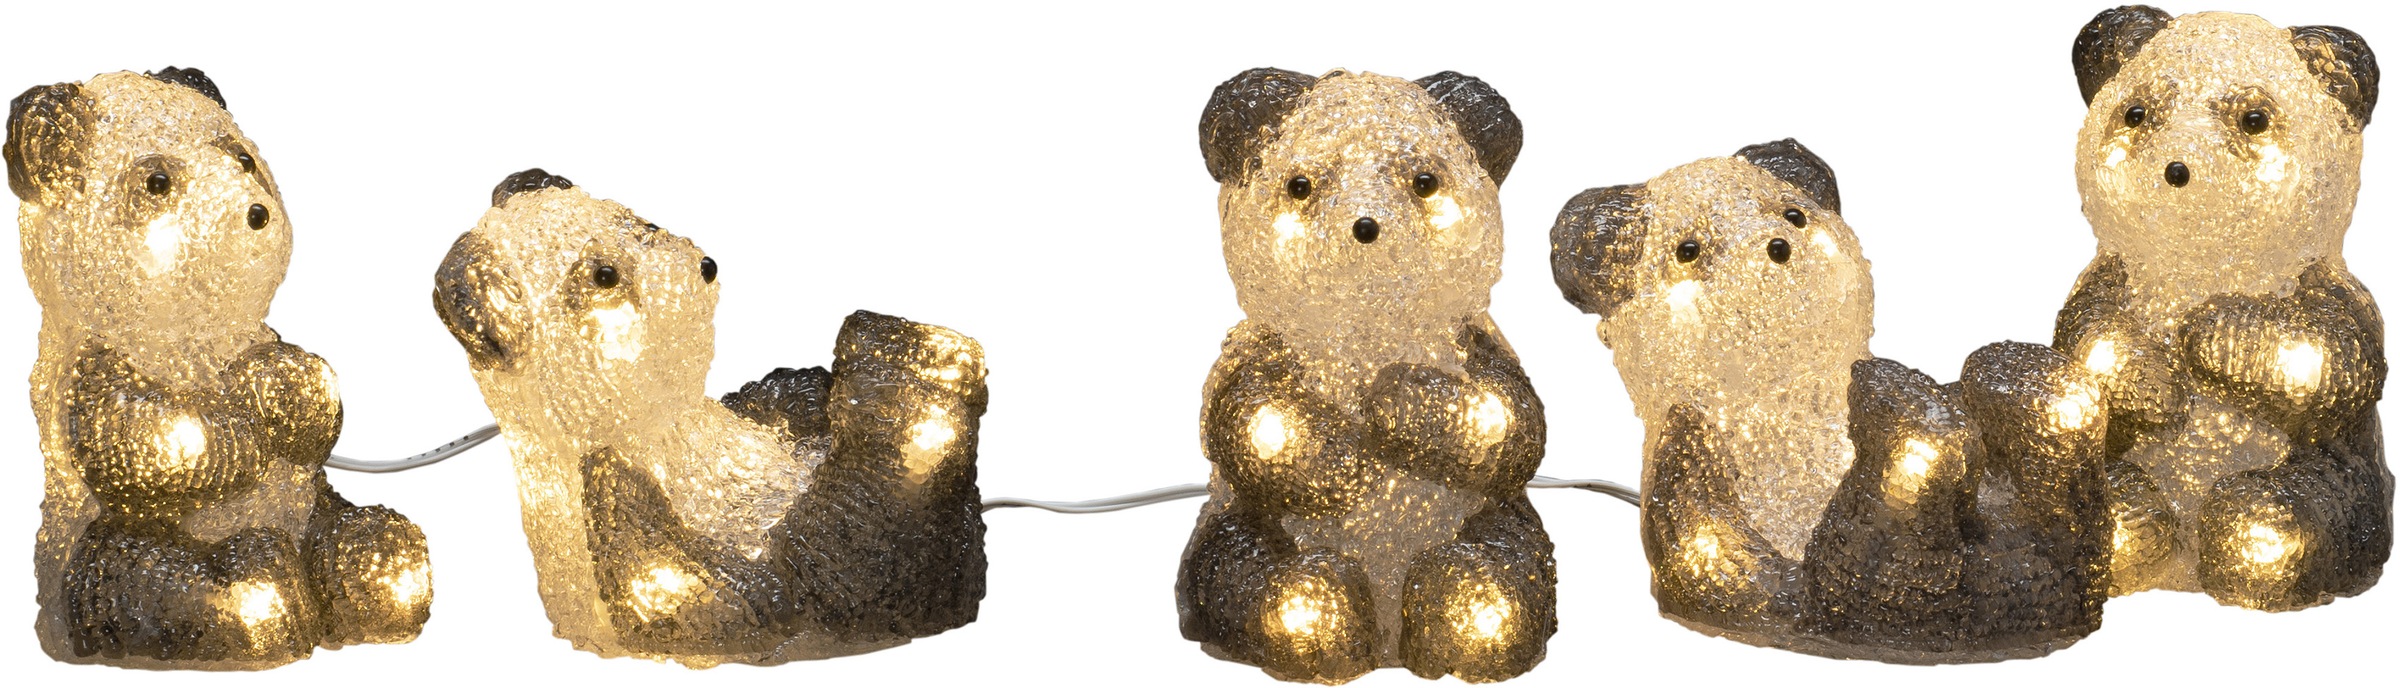 KONSTSMIDE LED-Lichterkette »Weihnachtsdeko aussen«, 40 warm weiße Dioden  auf Raten kaufen